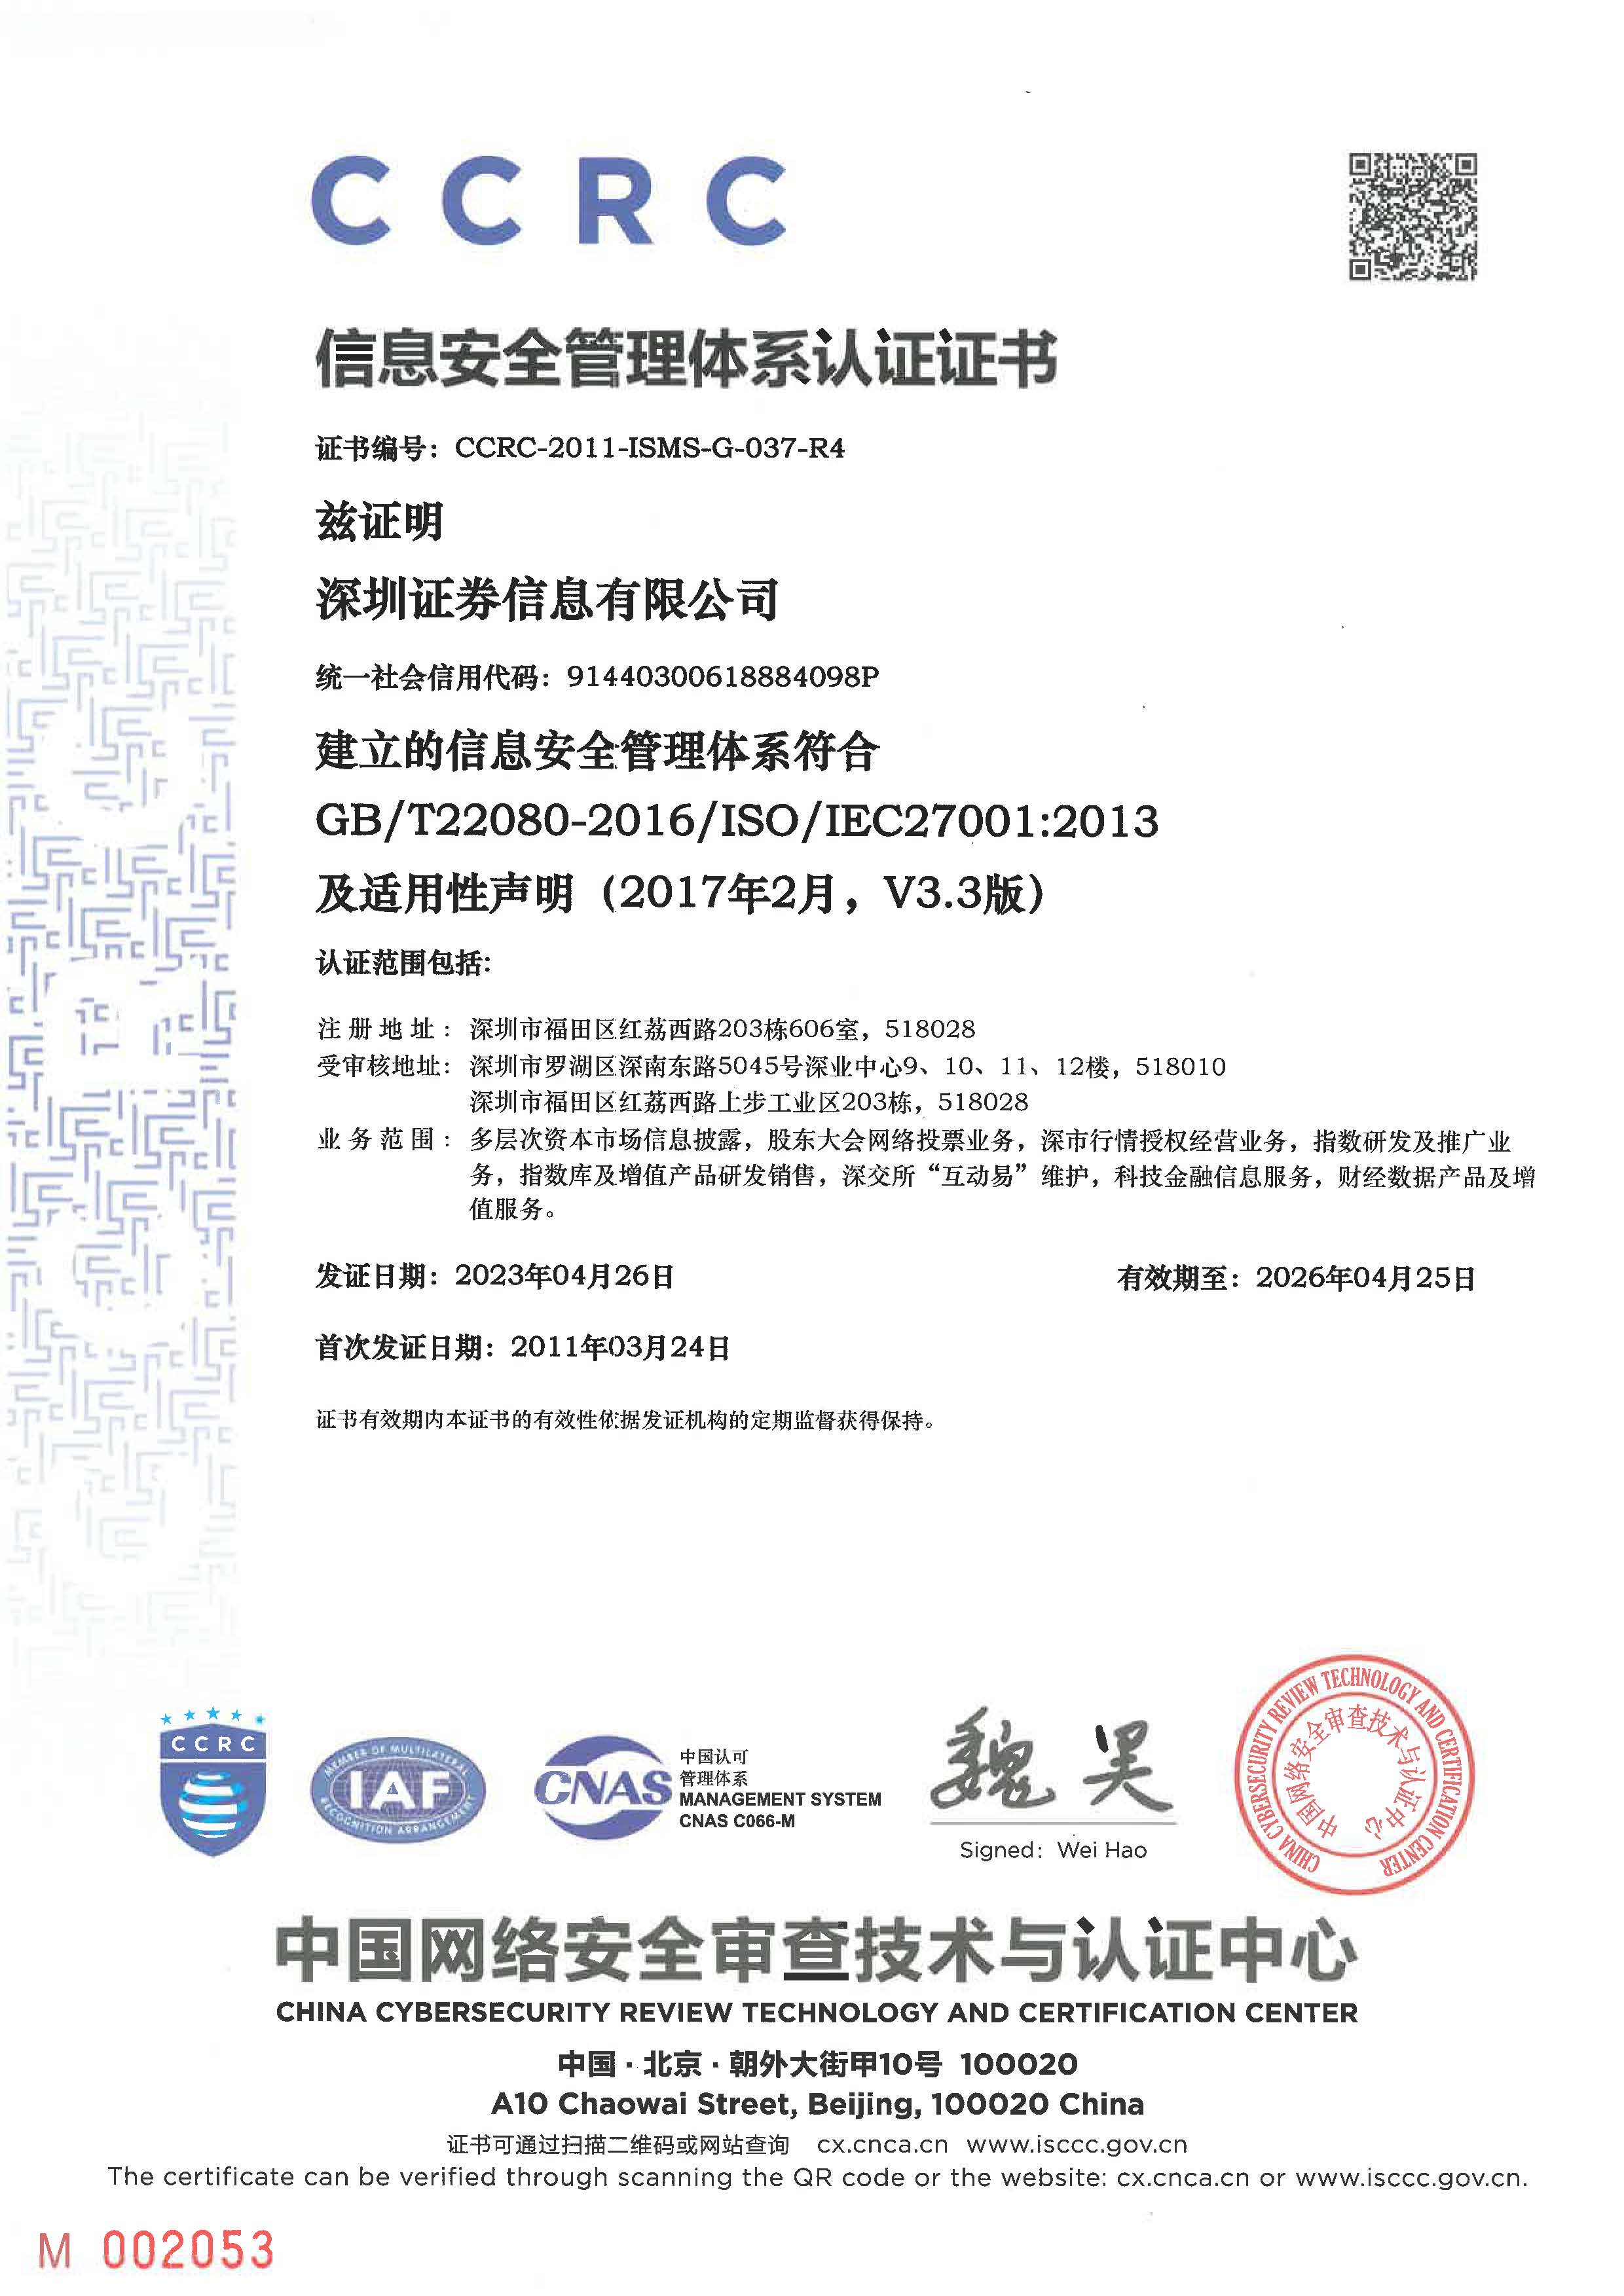 ISCCC安全管理体系认证证书-信息公司.jpg